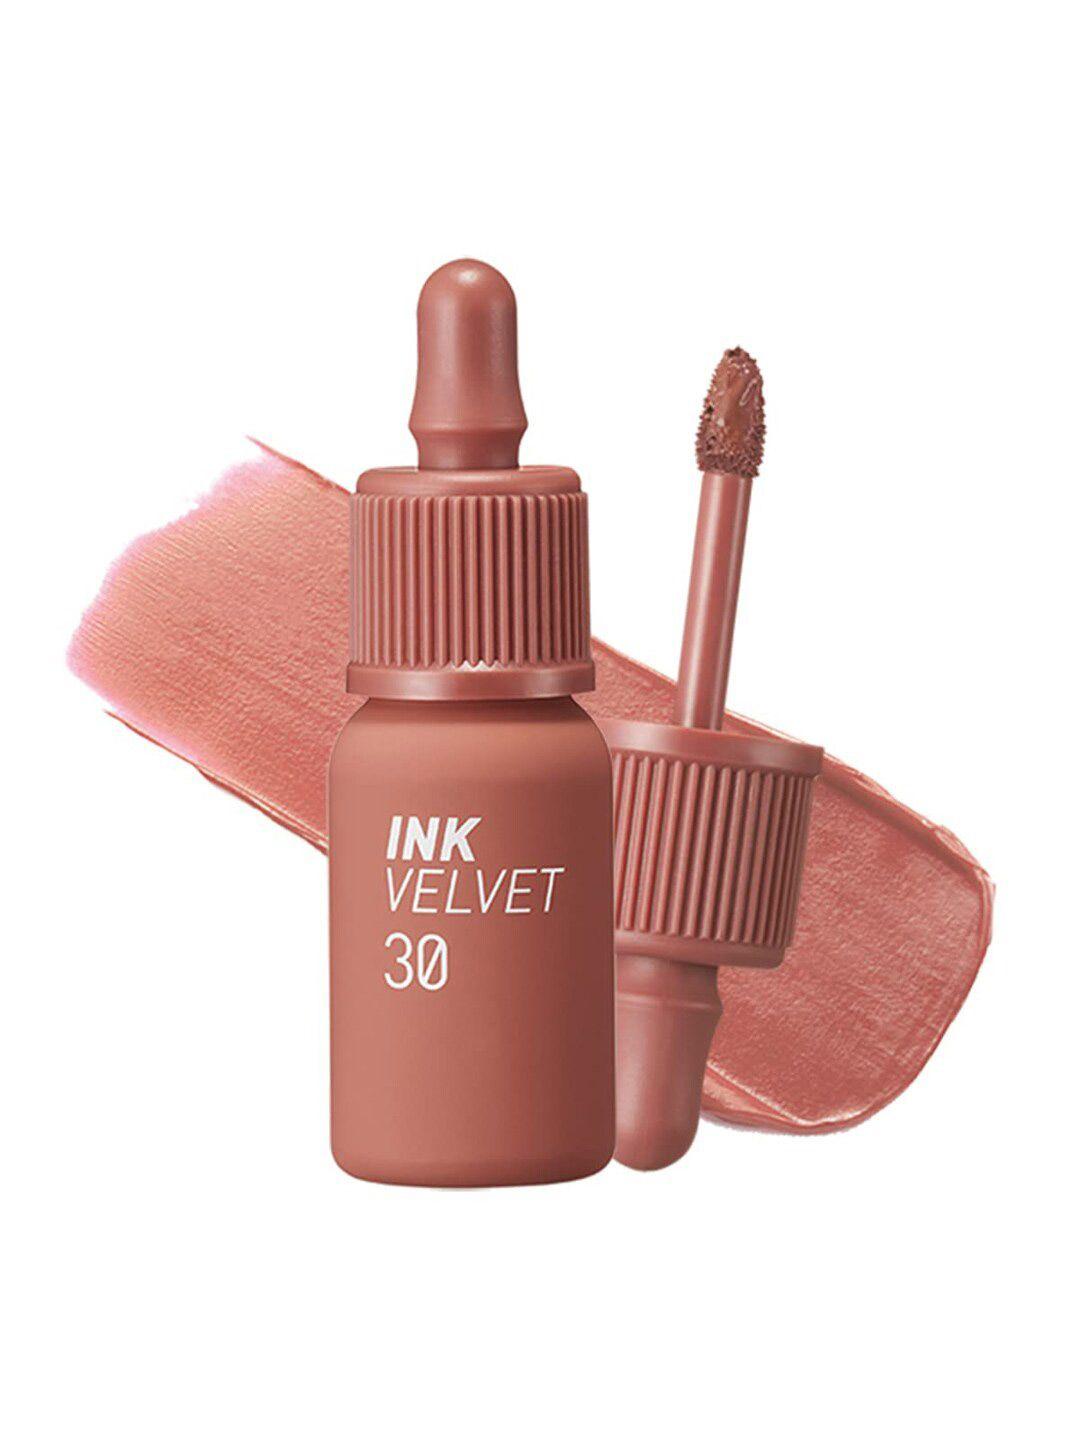 peripera ink velvet long-lasting liquid lipstick - classcic nude 30